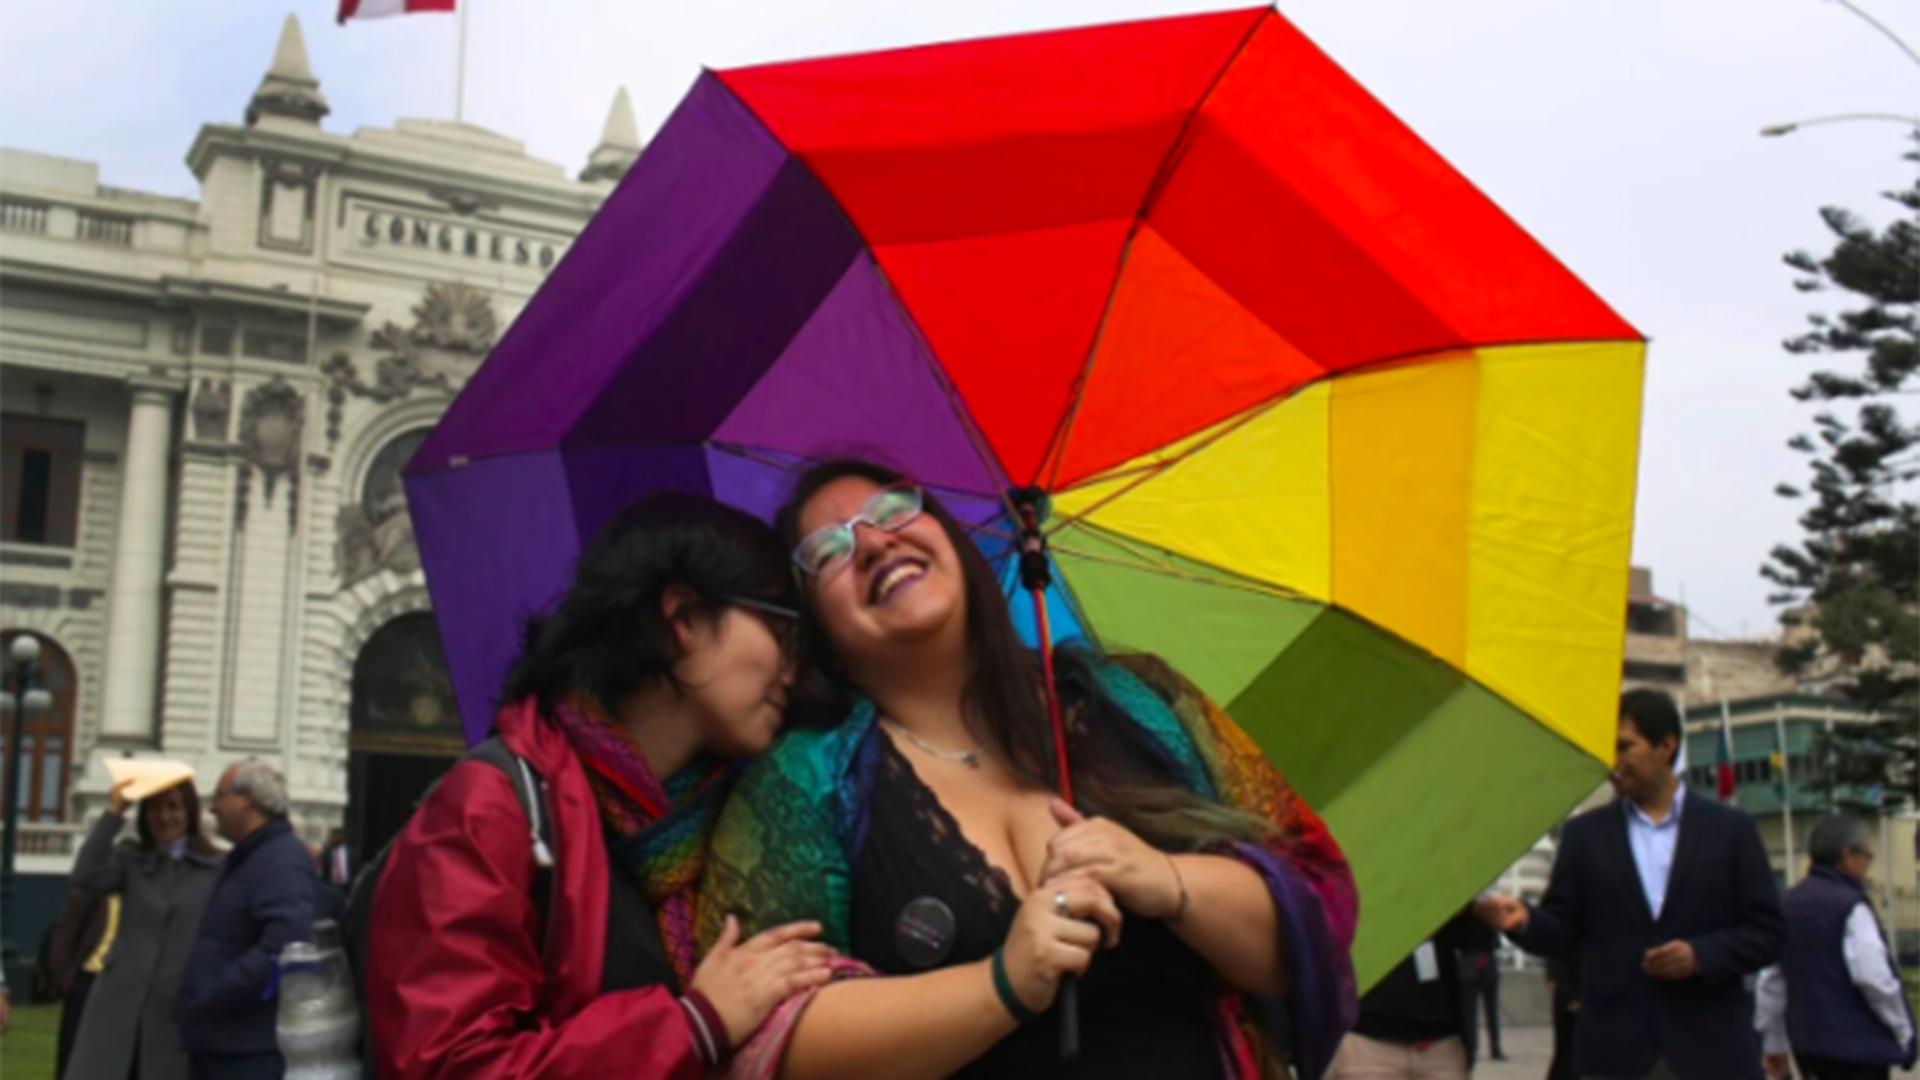 Giancarlo Mori explicó los 40 años del movimiento LGBT en Perú: “La comunidad busca ser tratada como iguales”